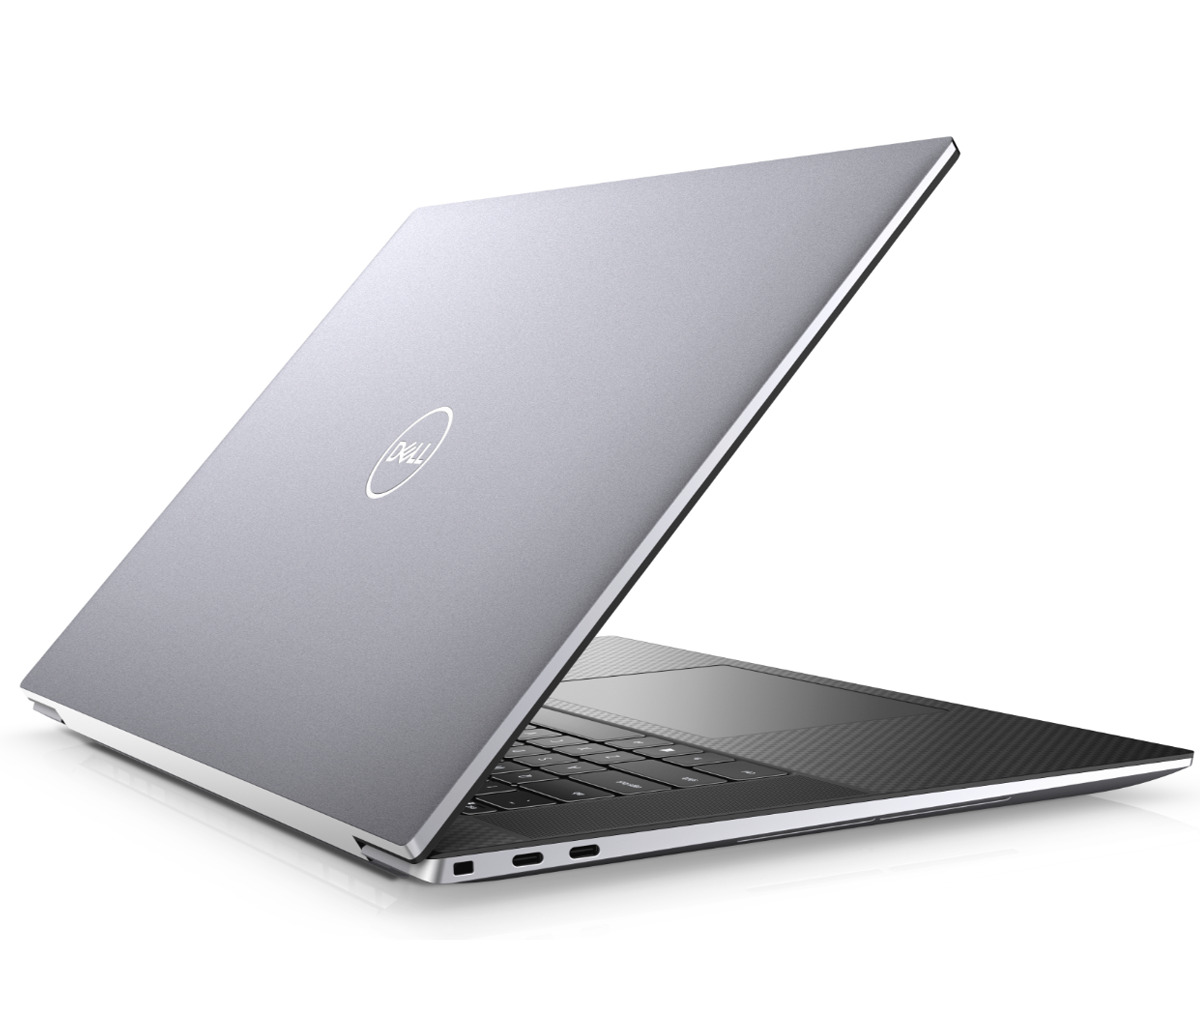 Dell Precision 5760: Wydajność i mobilność dla profesjonalistów. Odkryj potęgę laptopa Dell Precision 5760, zaprojektowanego z myślą o wymagających użytkownikach, którzy potrzebują wydajnej i mobilnej stacji roboczej.